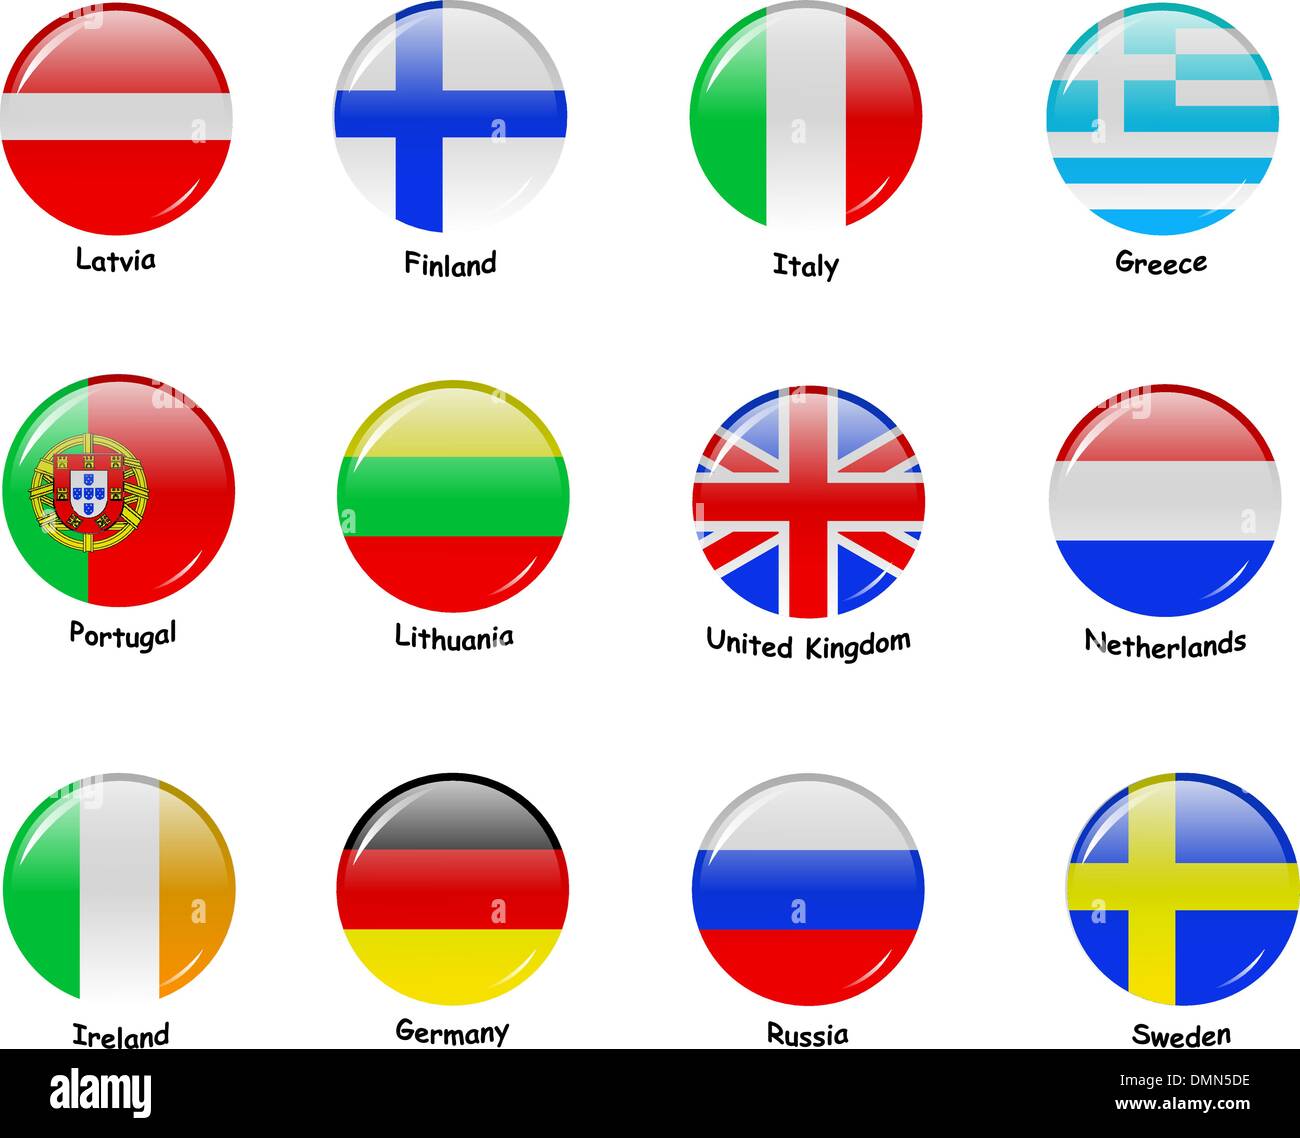 Flages européenne - Partie 1 Illustration de Vecteur